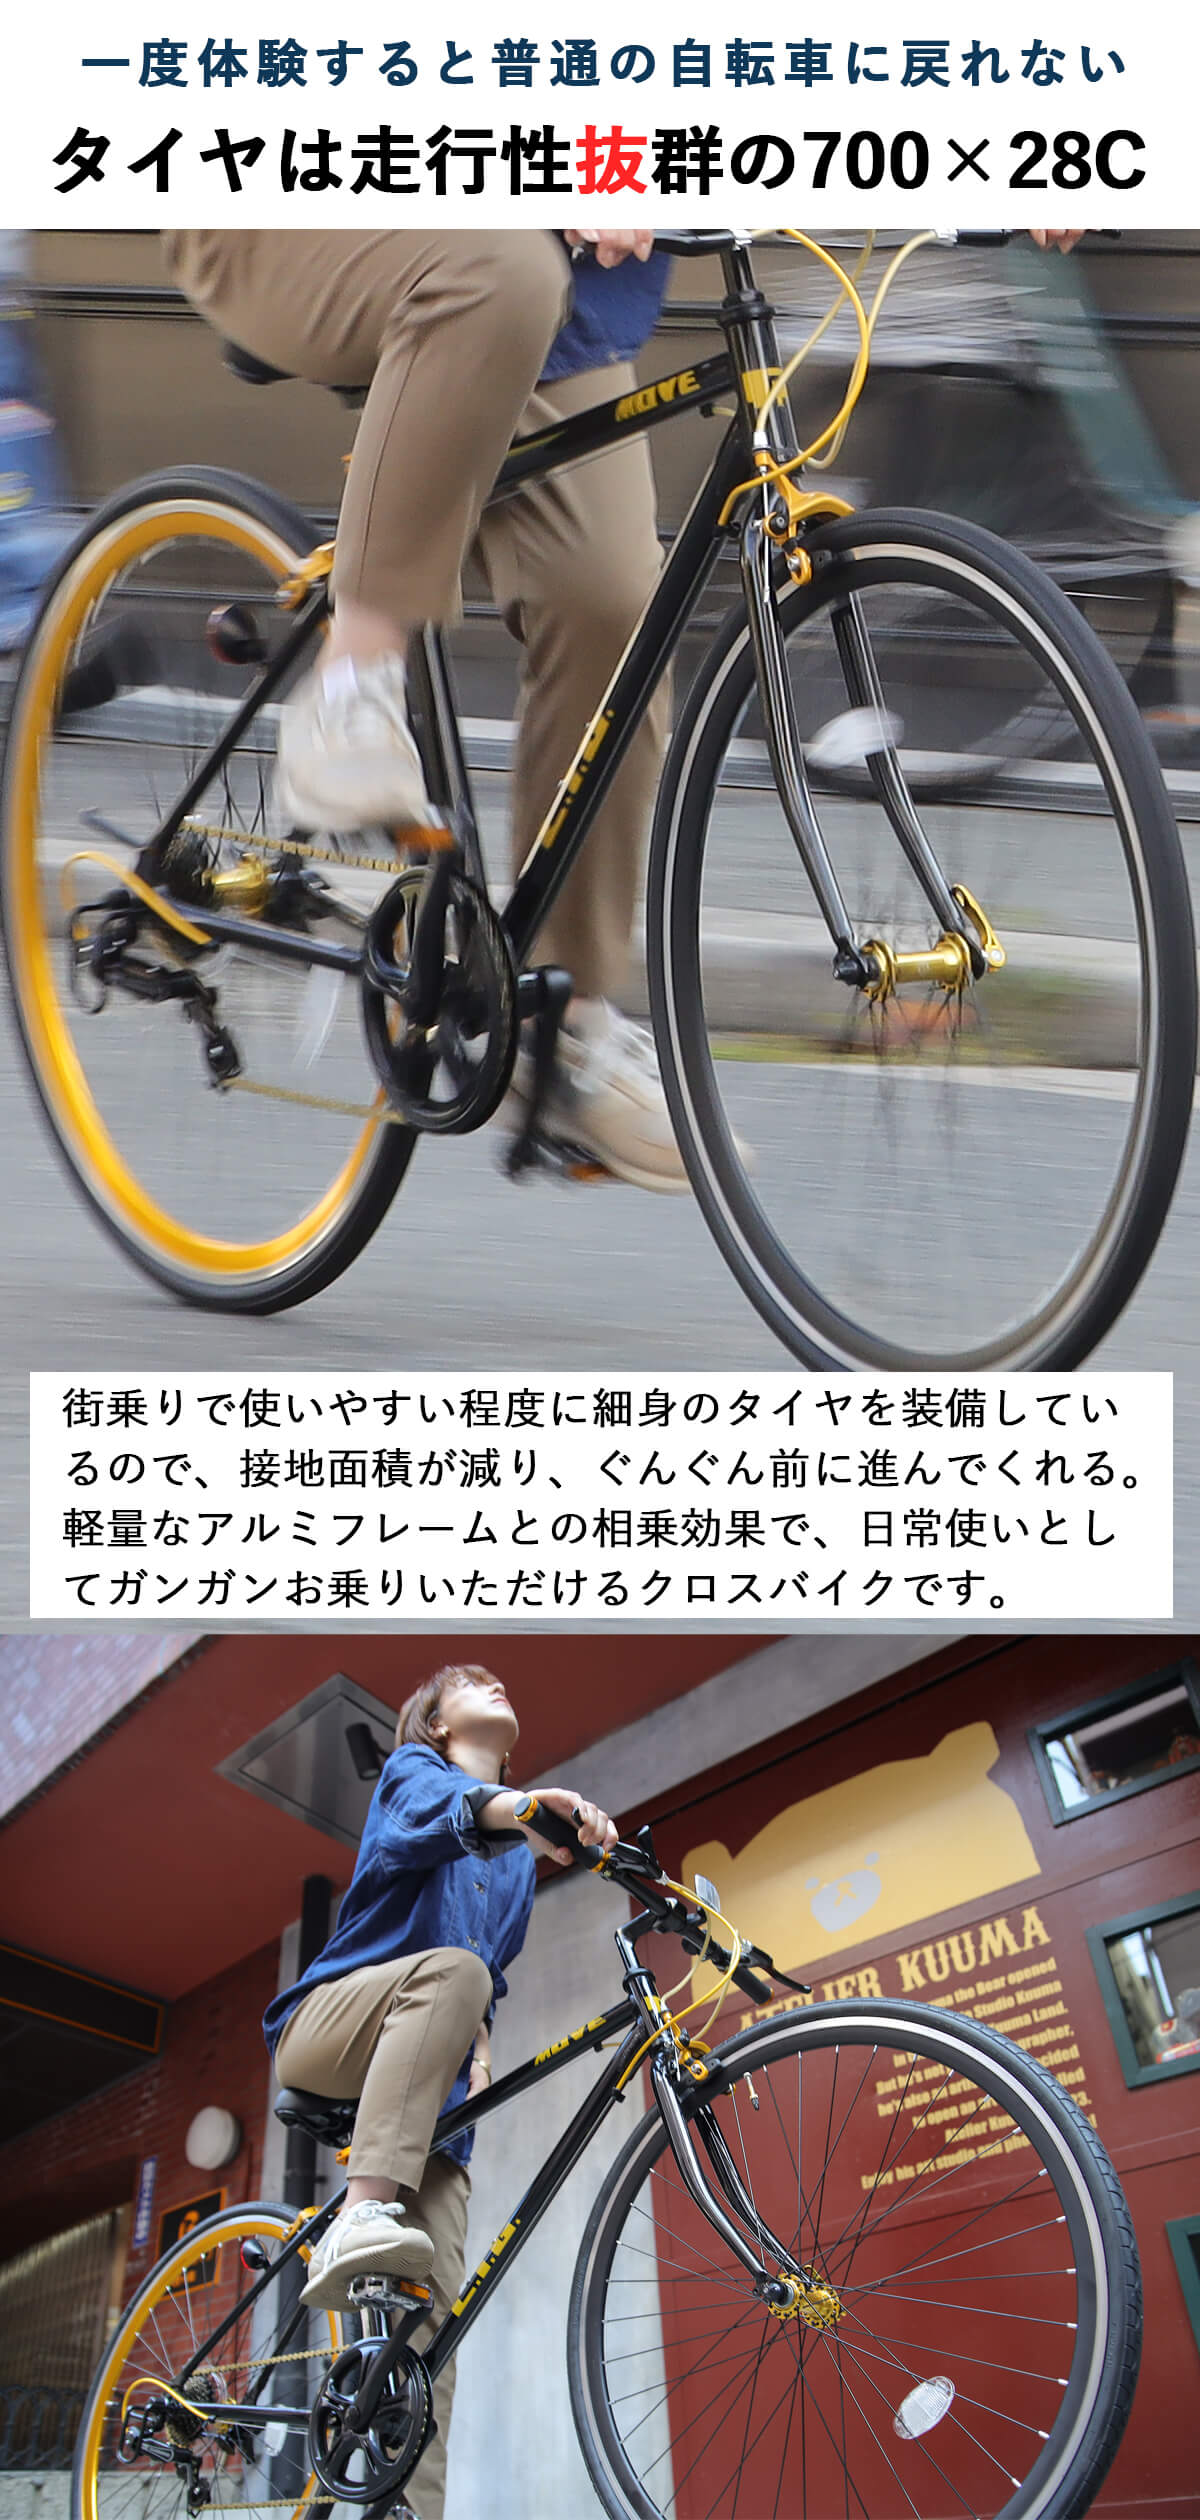 クロスバイク 完成品 自転車 700×28C シマノ7段変速 軽量 アルミ 